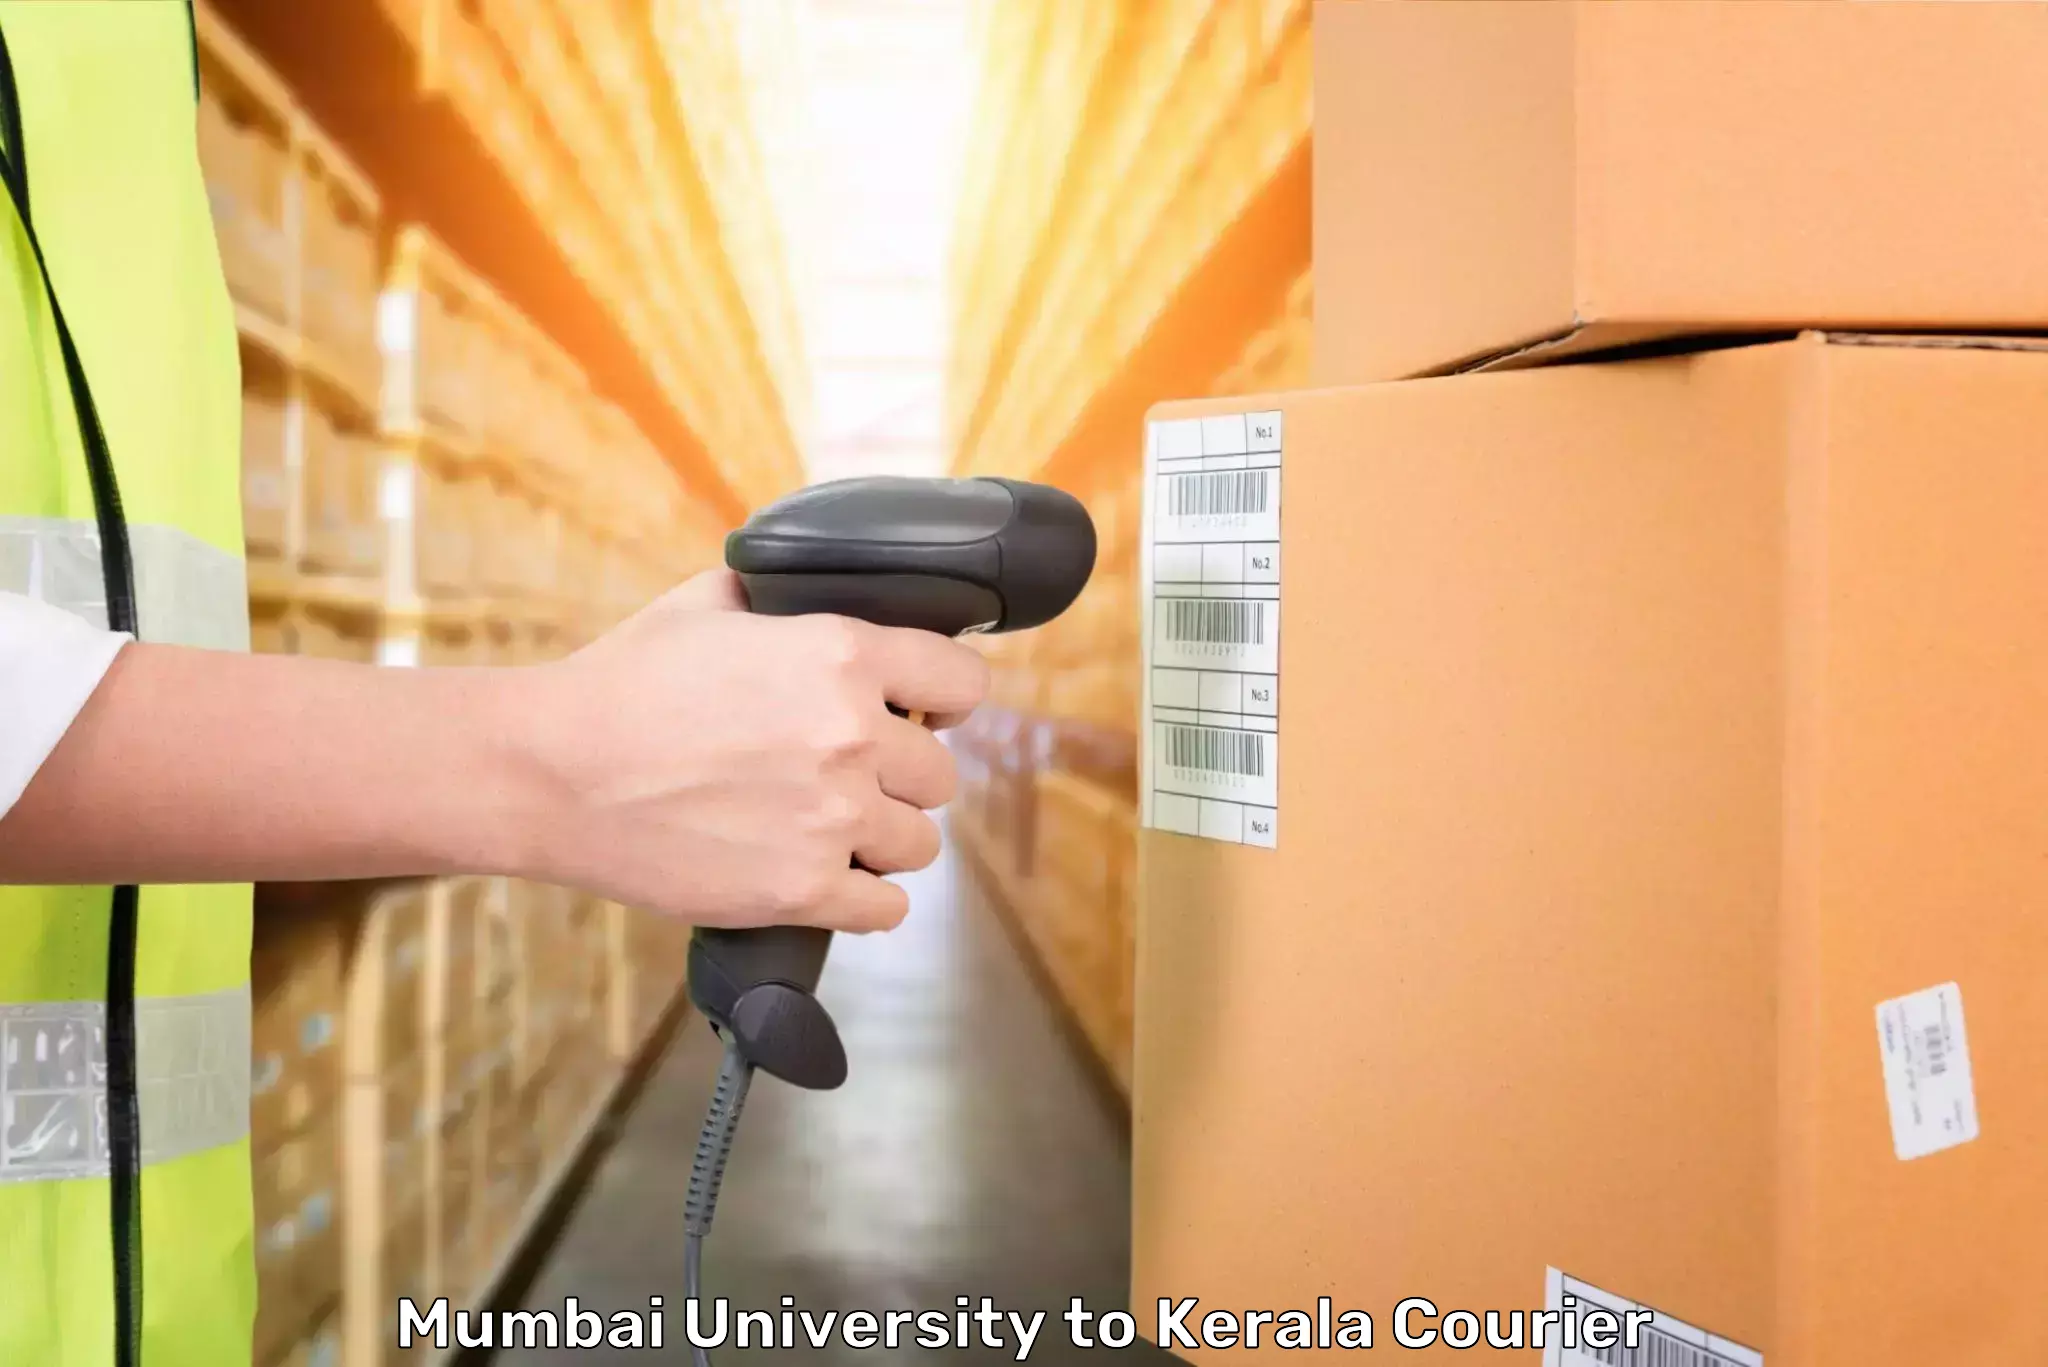 Same day luggage service Mumbai University to Pandikkad